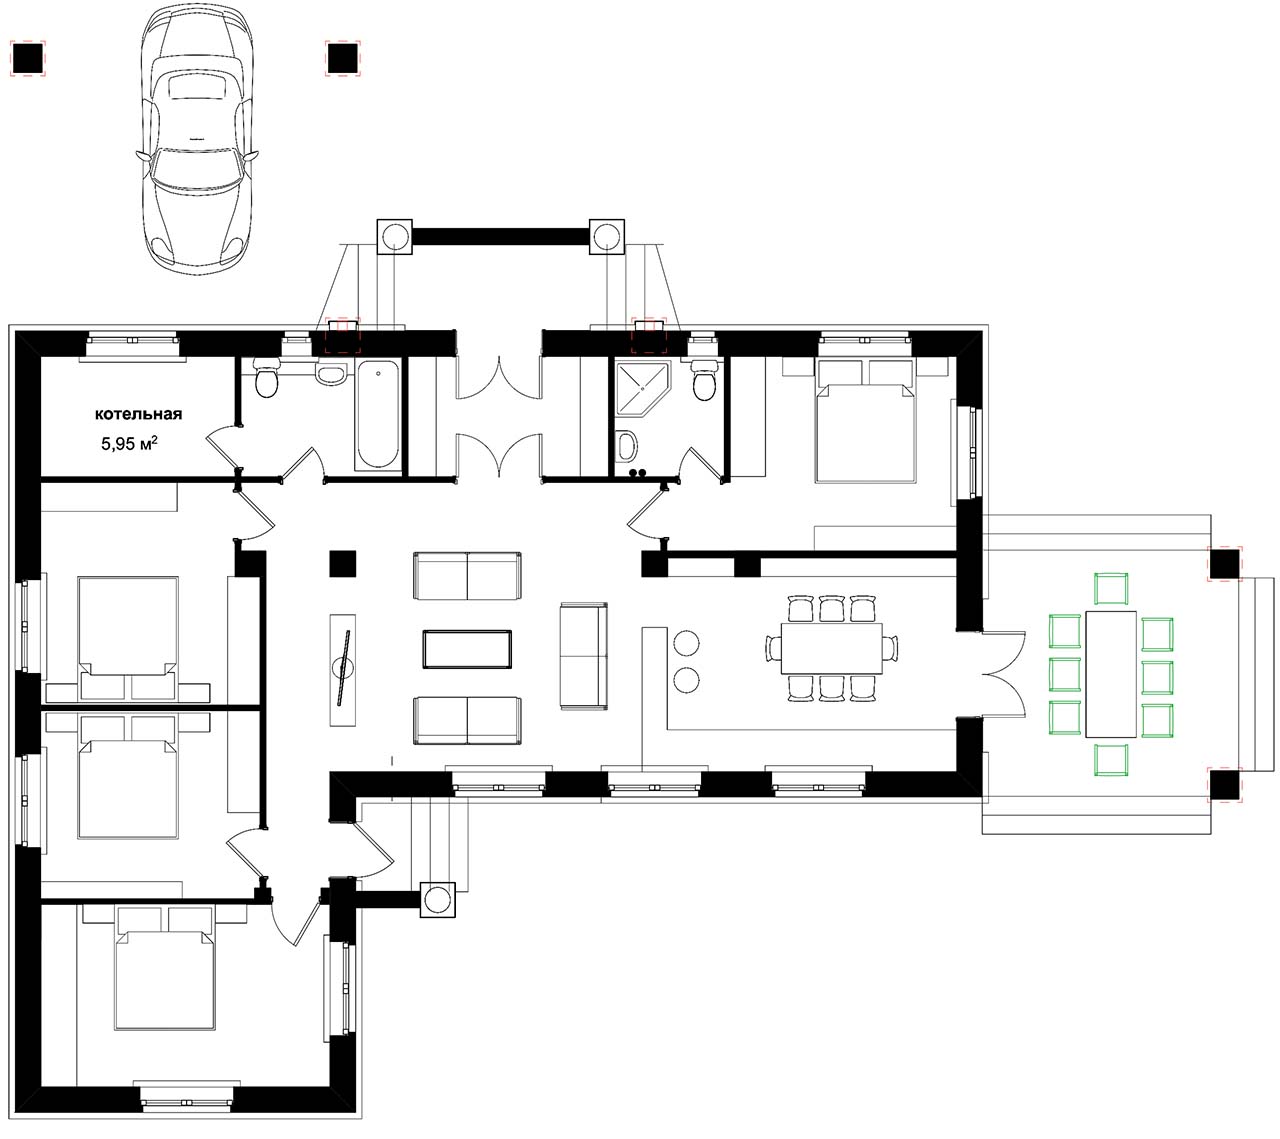 вариант плана одноэтажного дома с мастер-спальней